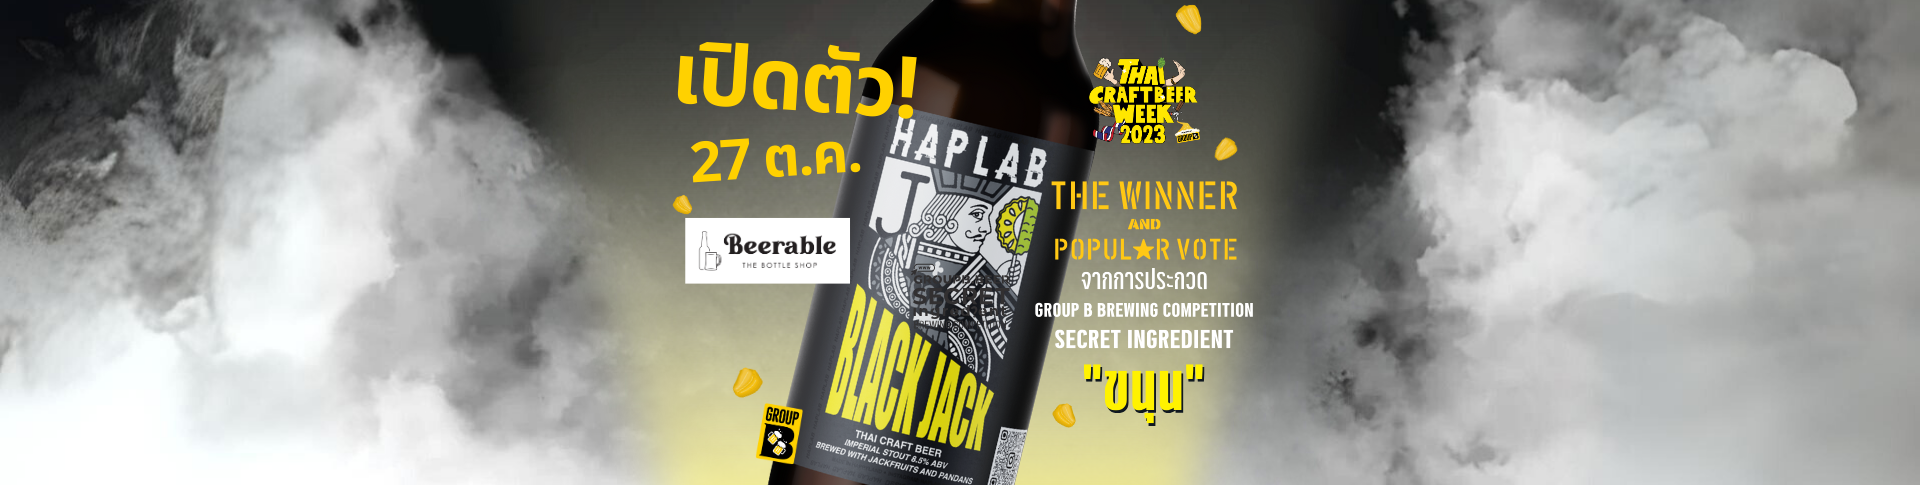 เปิดตัวเบียร์ Haplab @Beerable